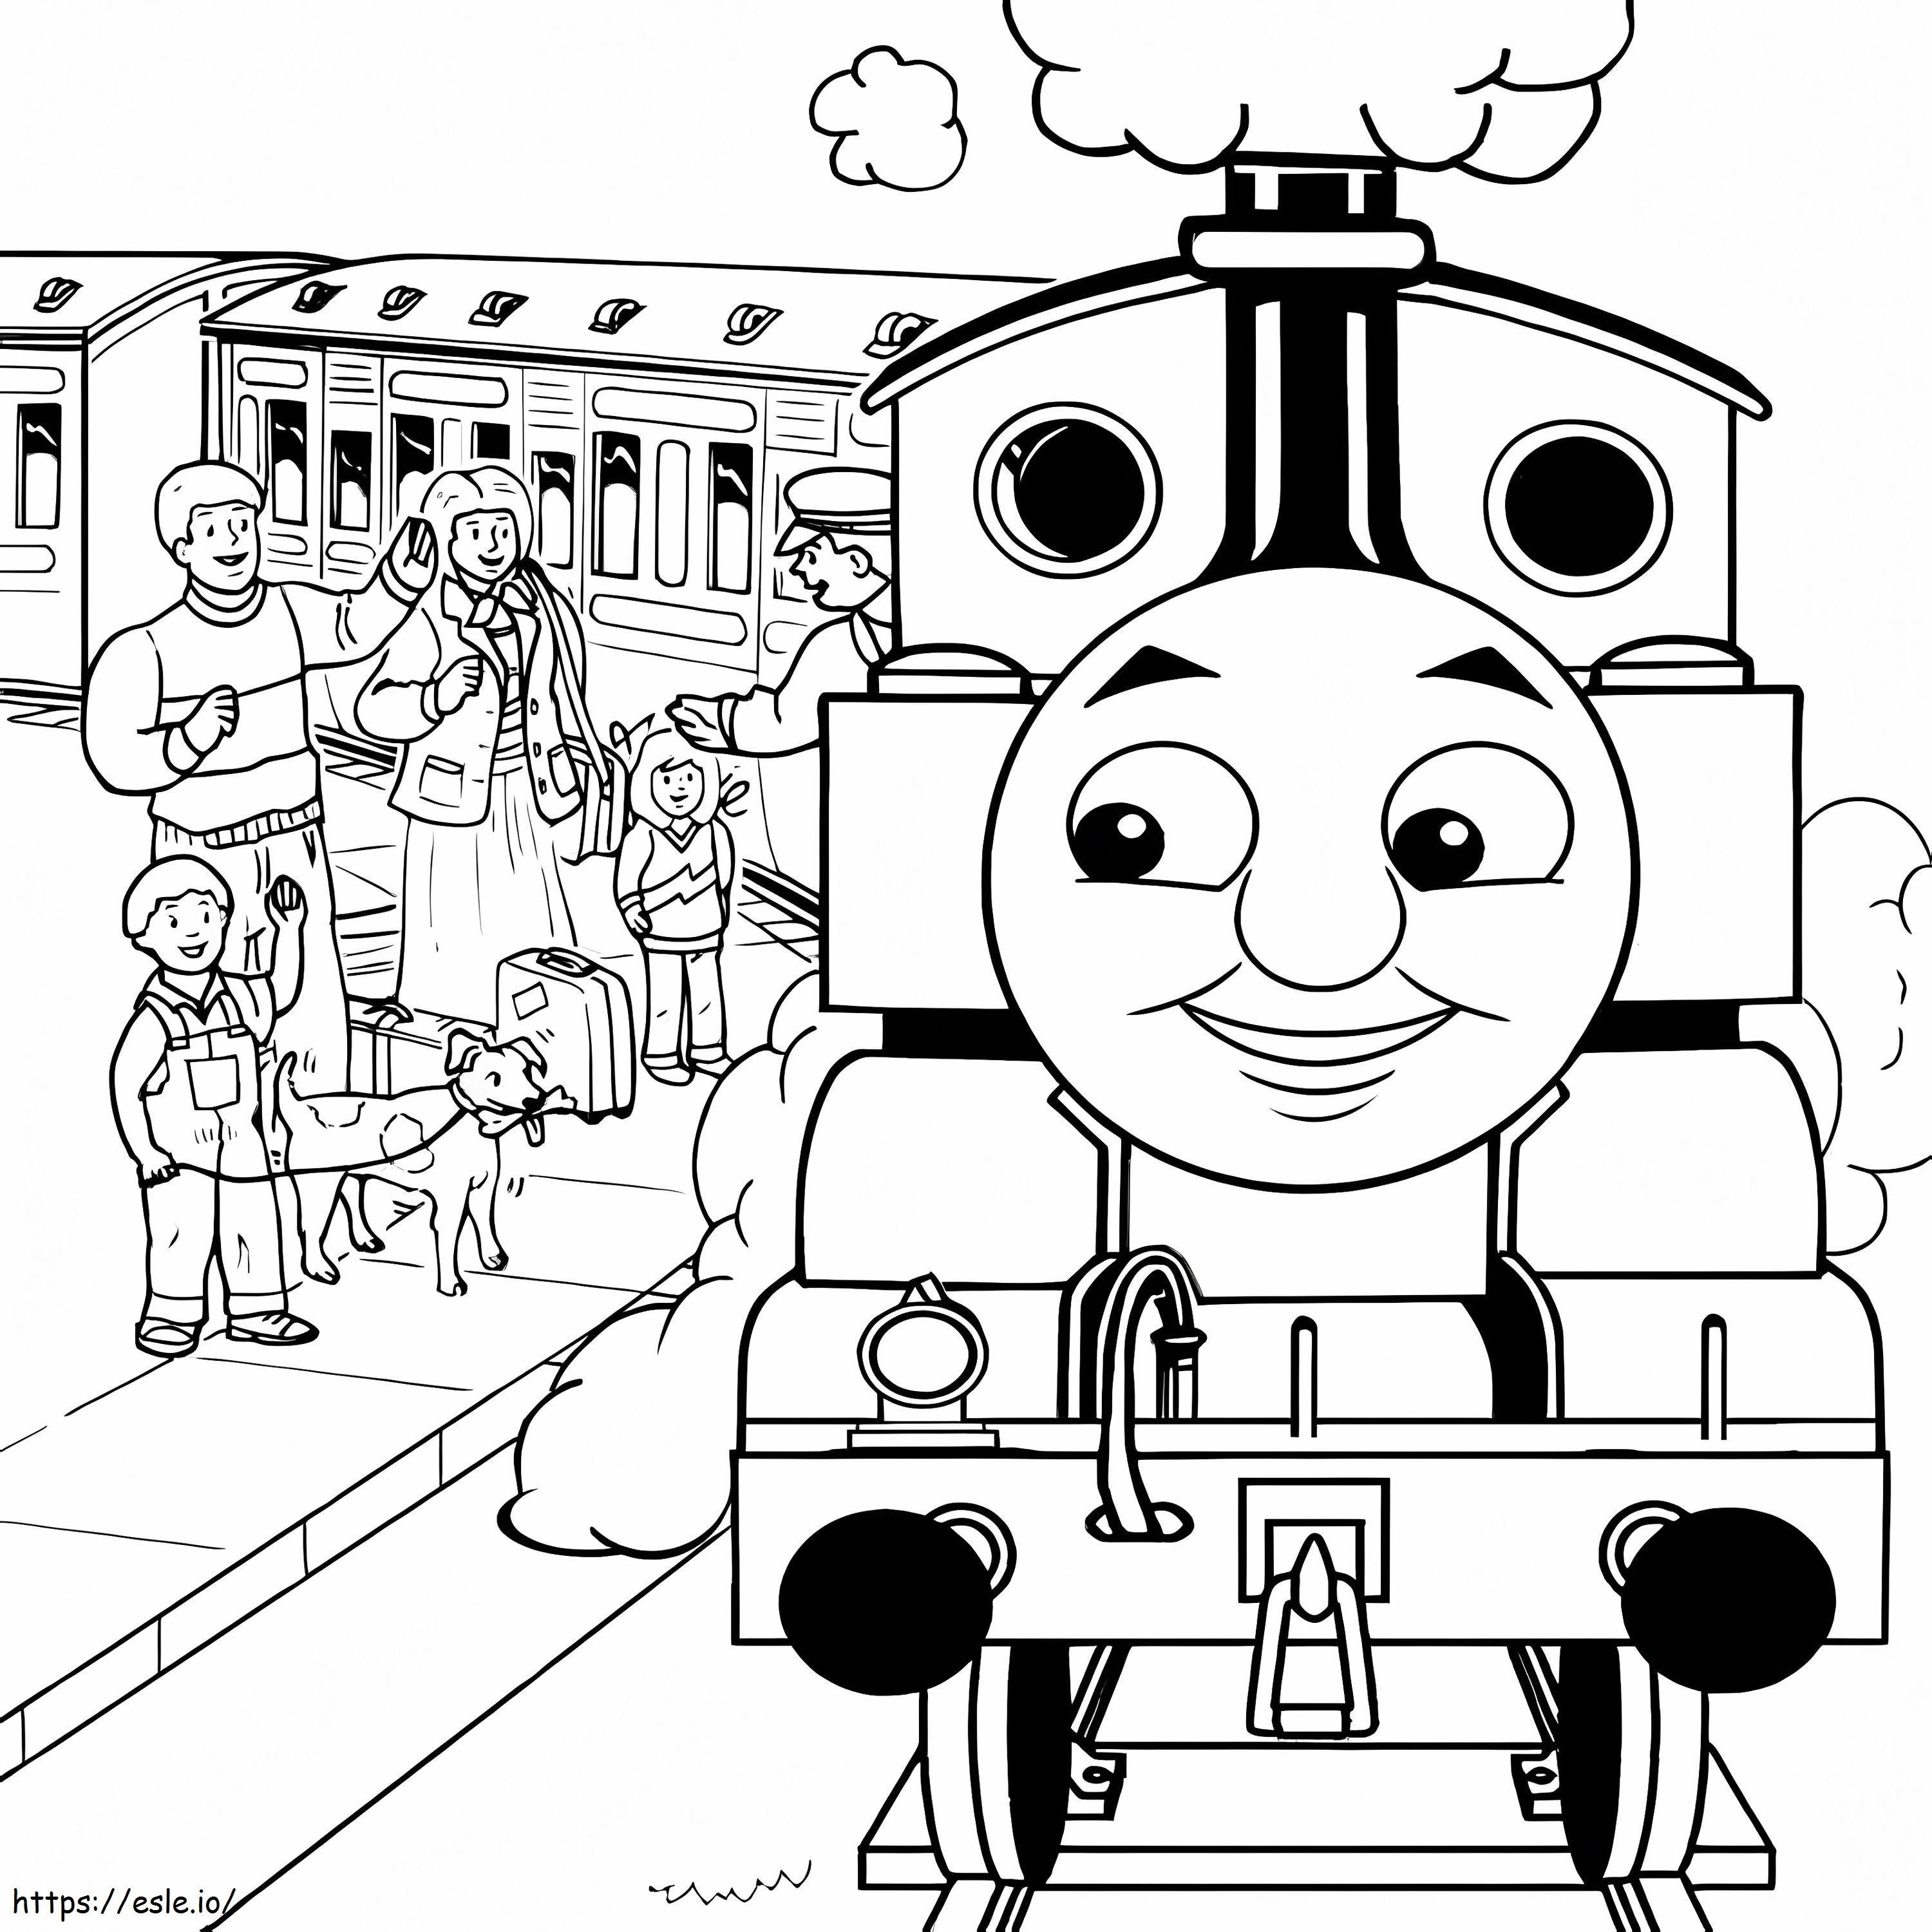 Thomas Il treno e la gente da colorare